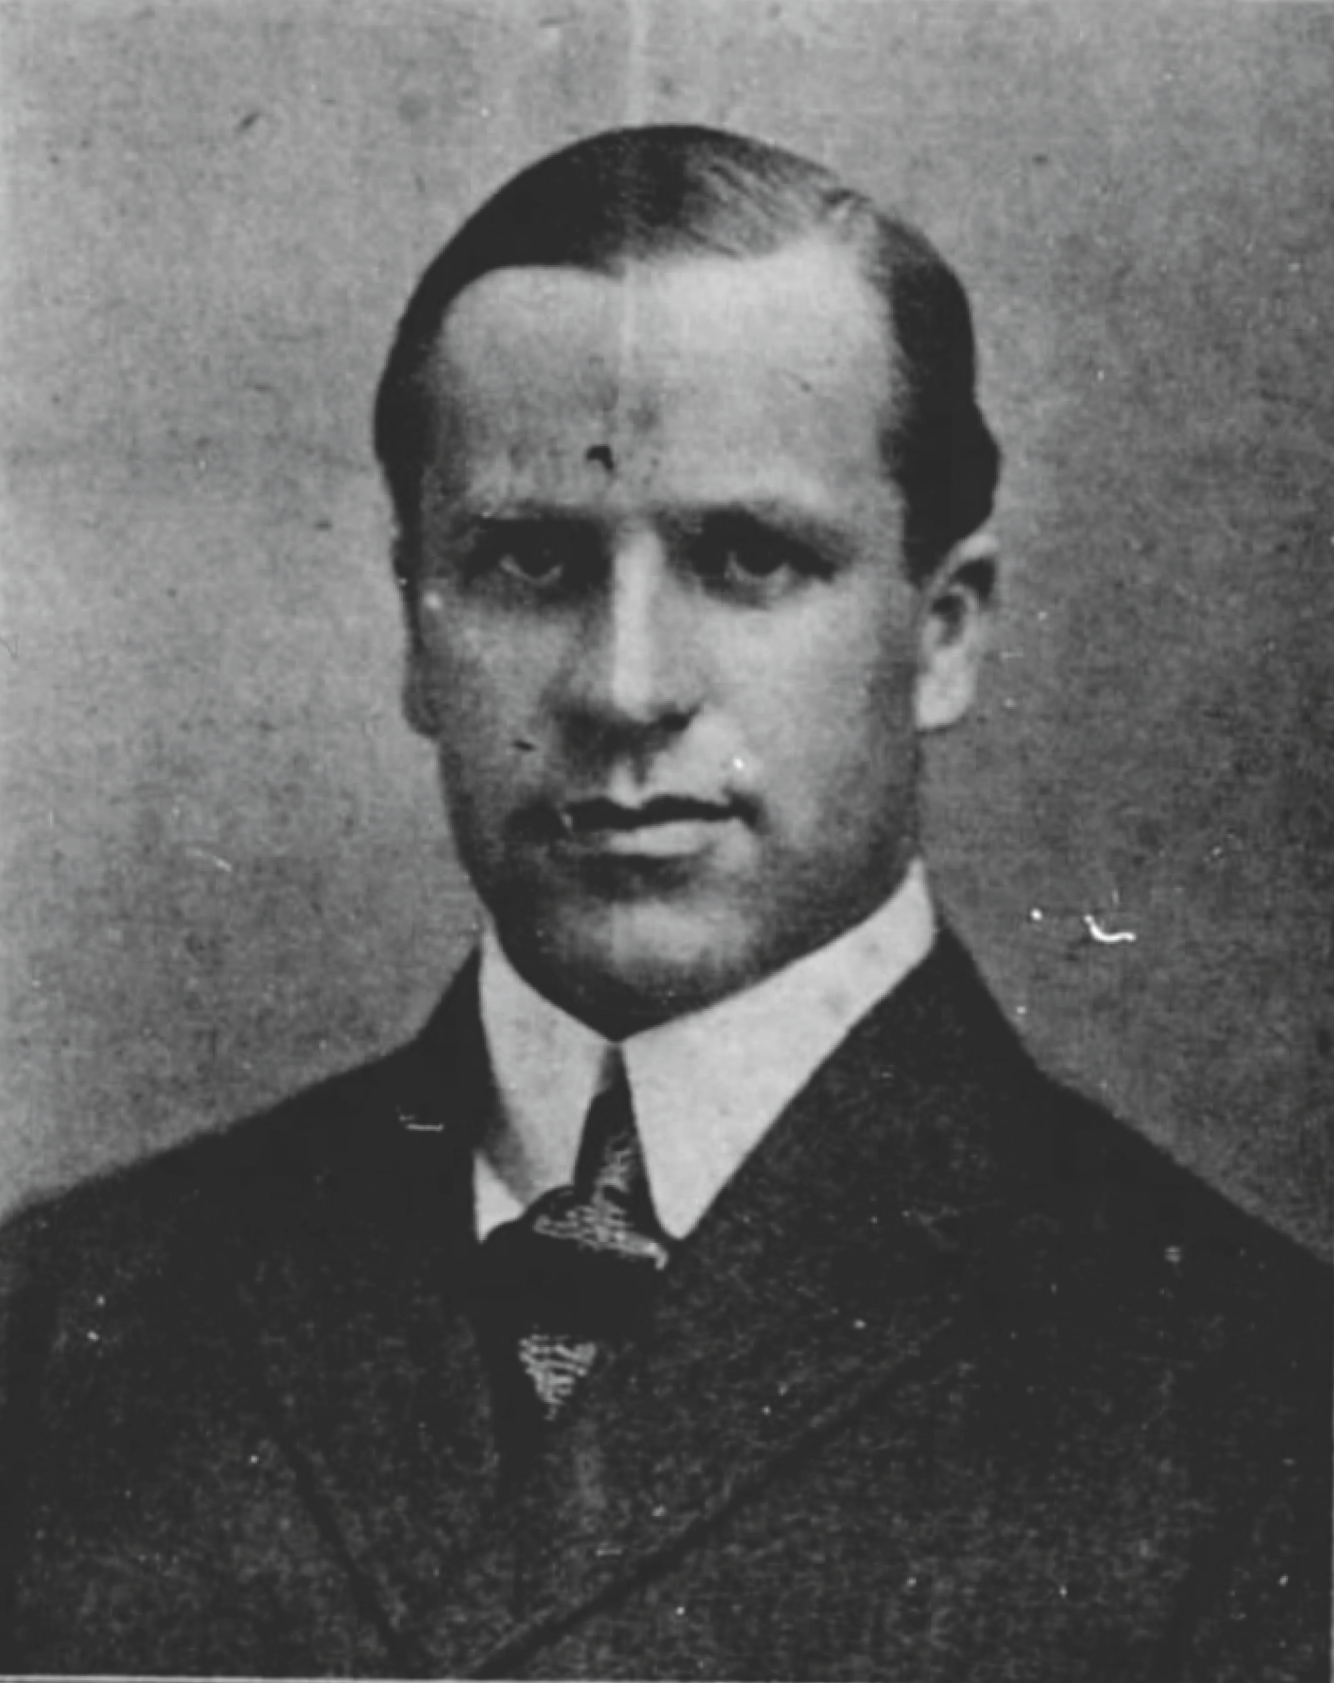 Portrait of Elias Bertram Mott